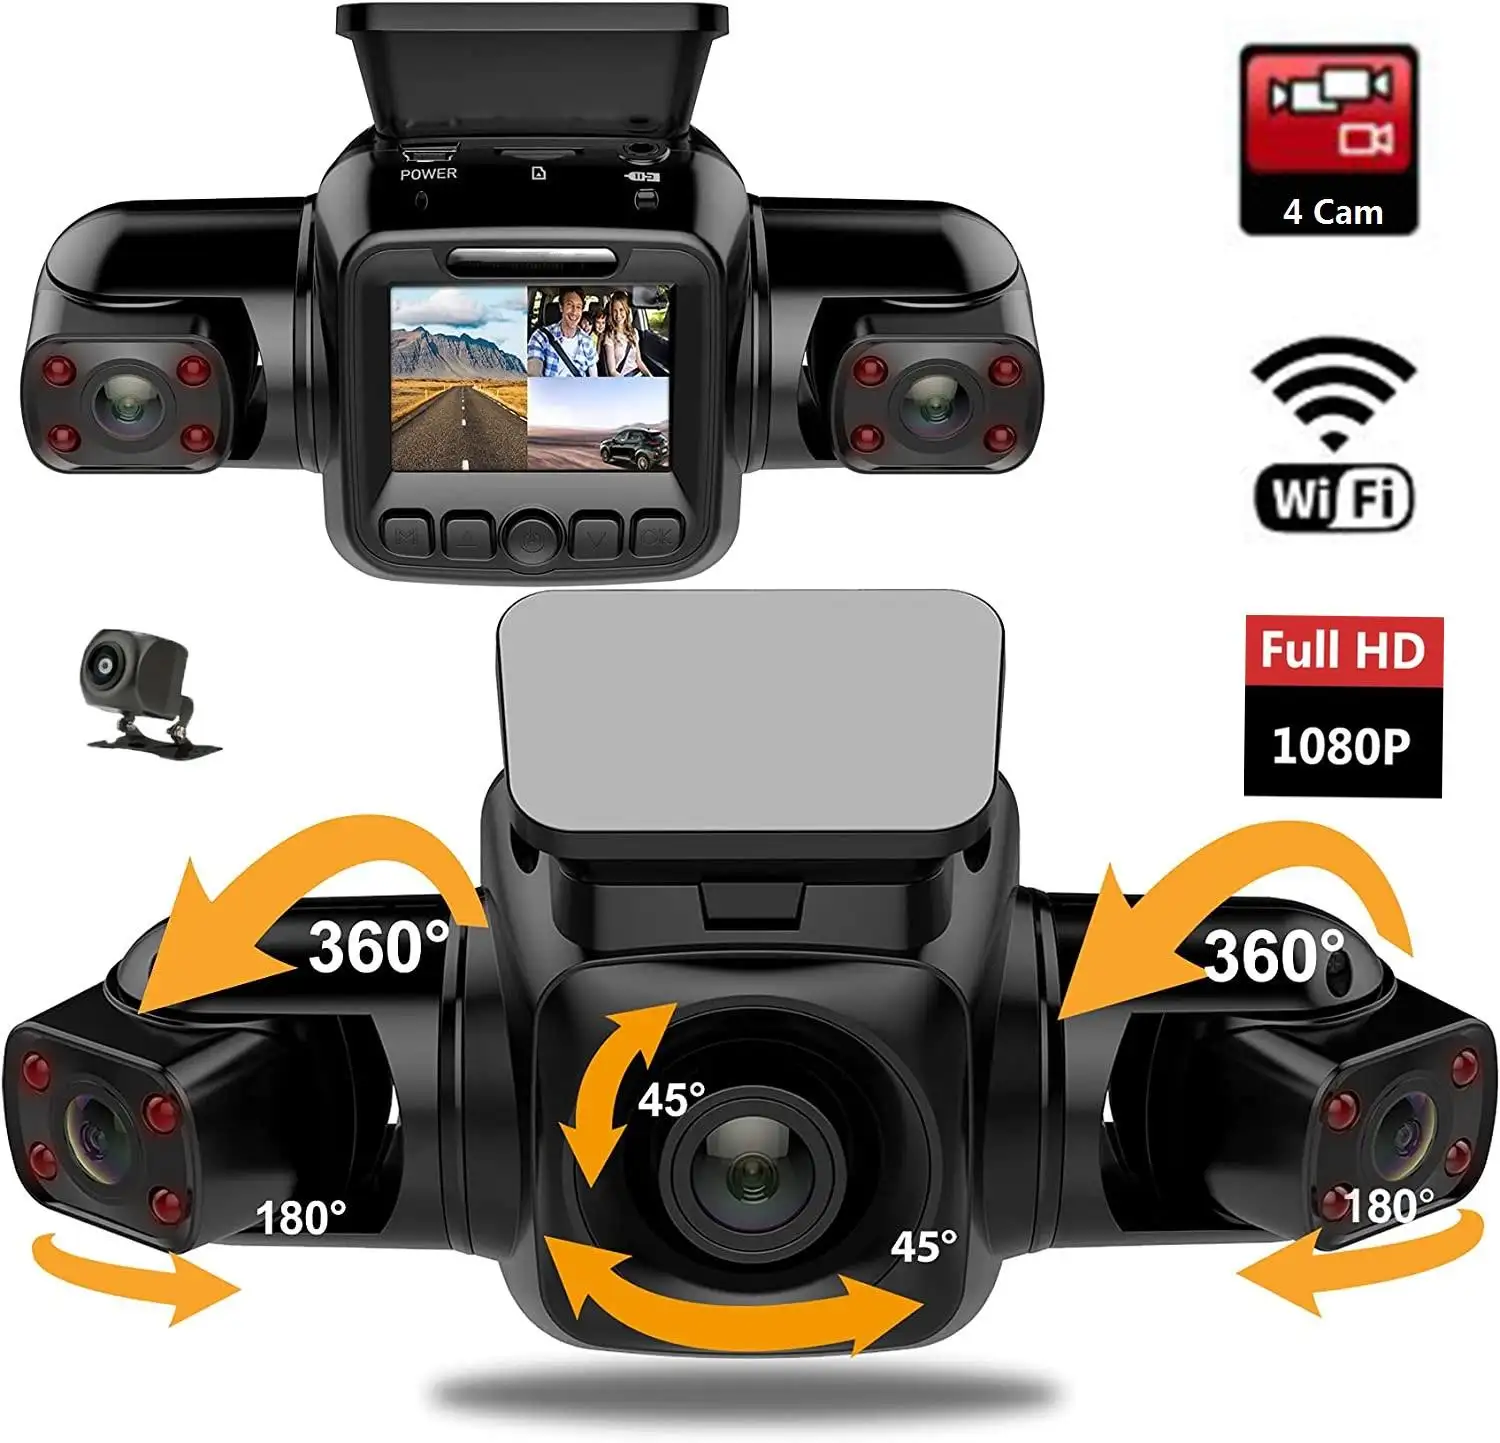 كاميرا 4 Camera p + p للسيارة Dvr Wifi جهاز تسجيل نظام تحديد المواقع للرؤية الليلية عدسة مزدوجة كاميرا داش مع كاميرا فيديو ثلاثية القنوات للرؤية الخلفية